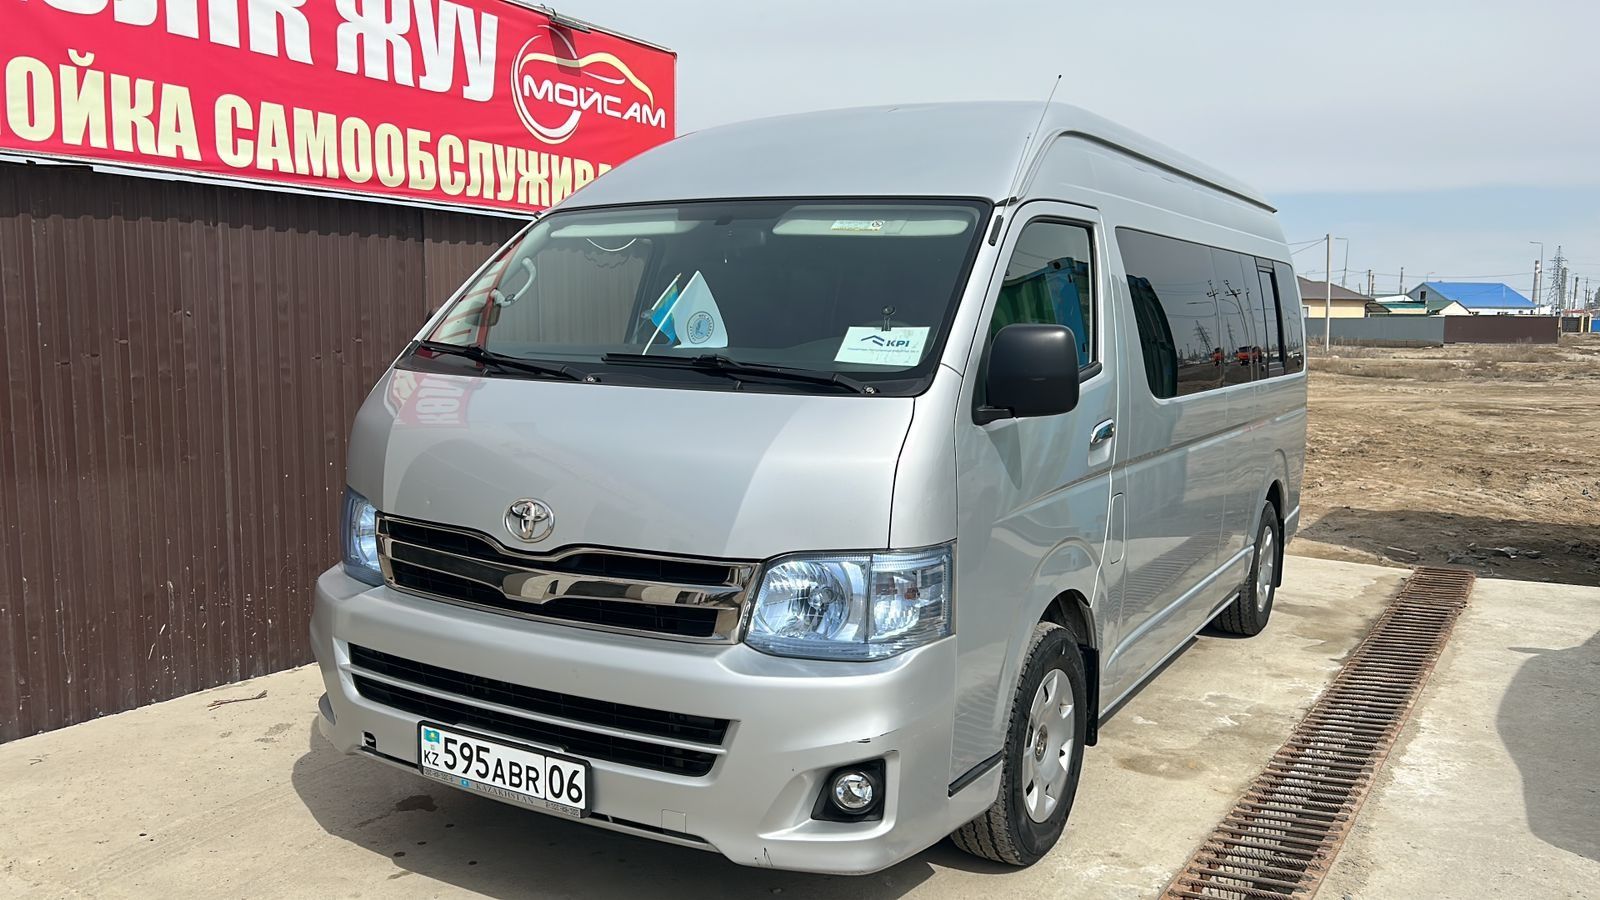 Автобусы в Казахстане - продажа новых и БУ пассажирских автобусов новых и  БУ на OLX.kz